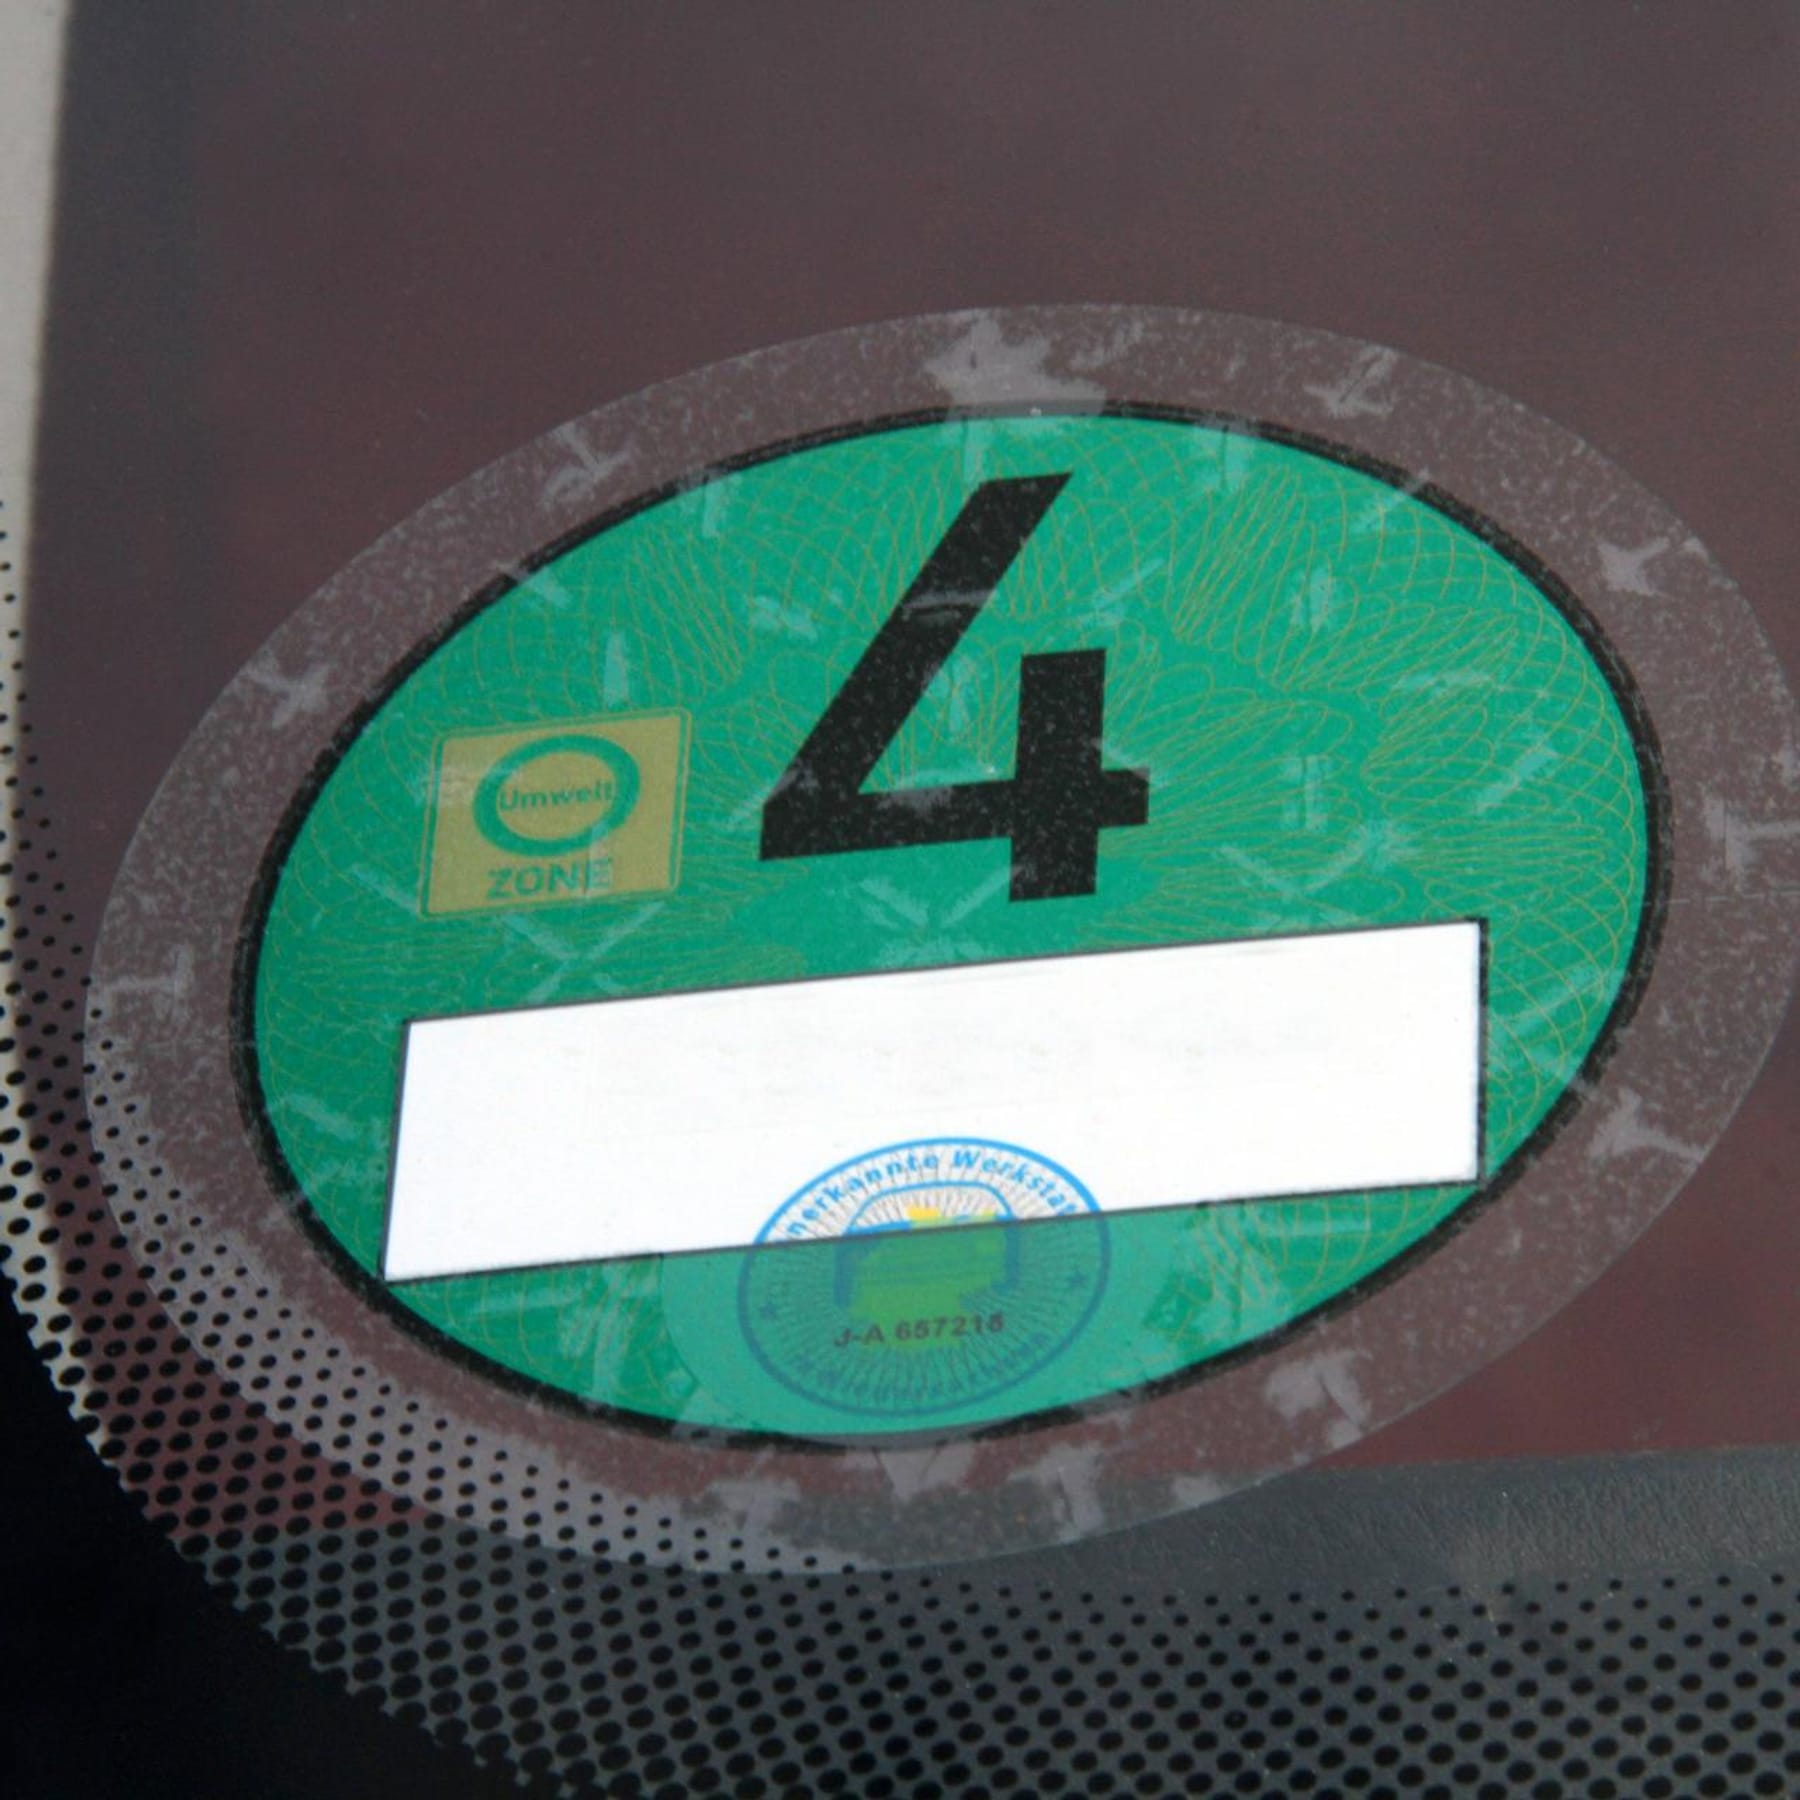 Grüne Plakette an Auto sorgt für Rätsel - warum fehlt ein Stück des  Aufklebers?